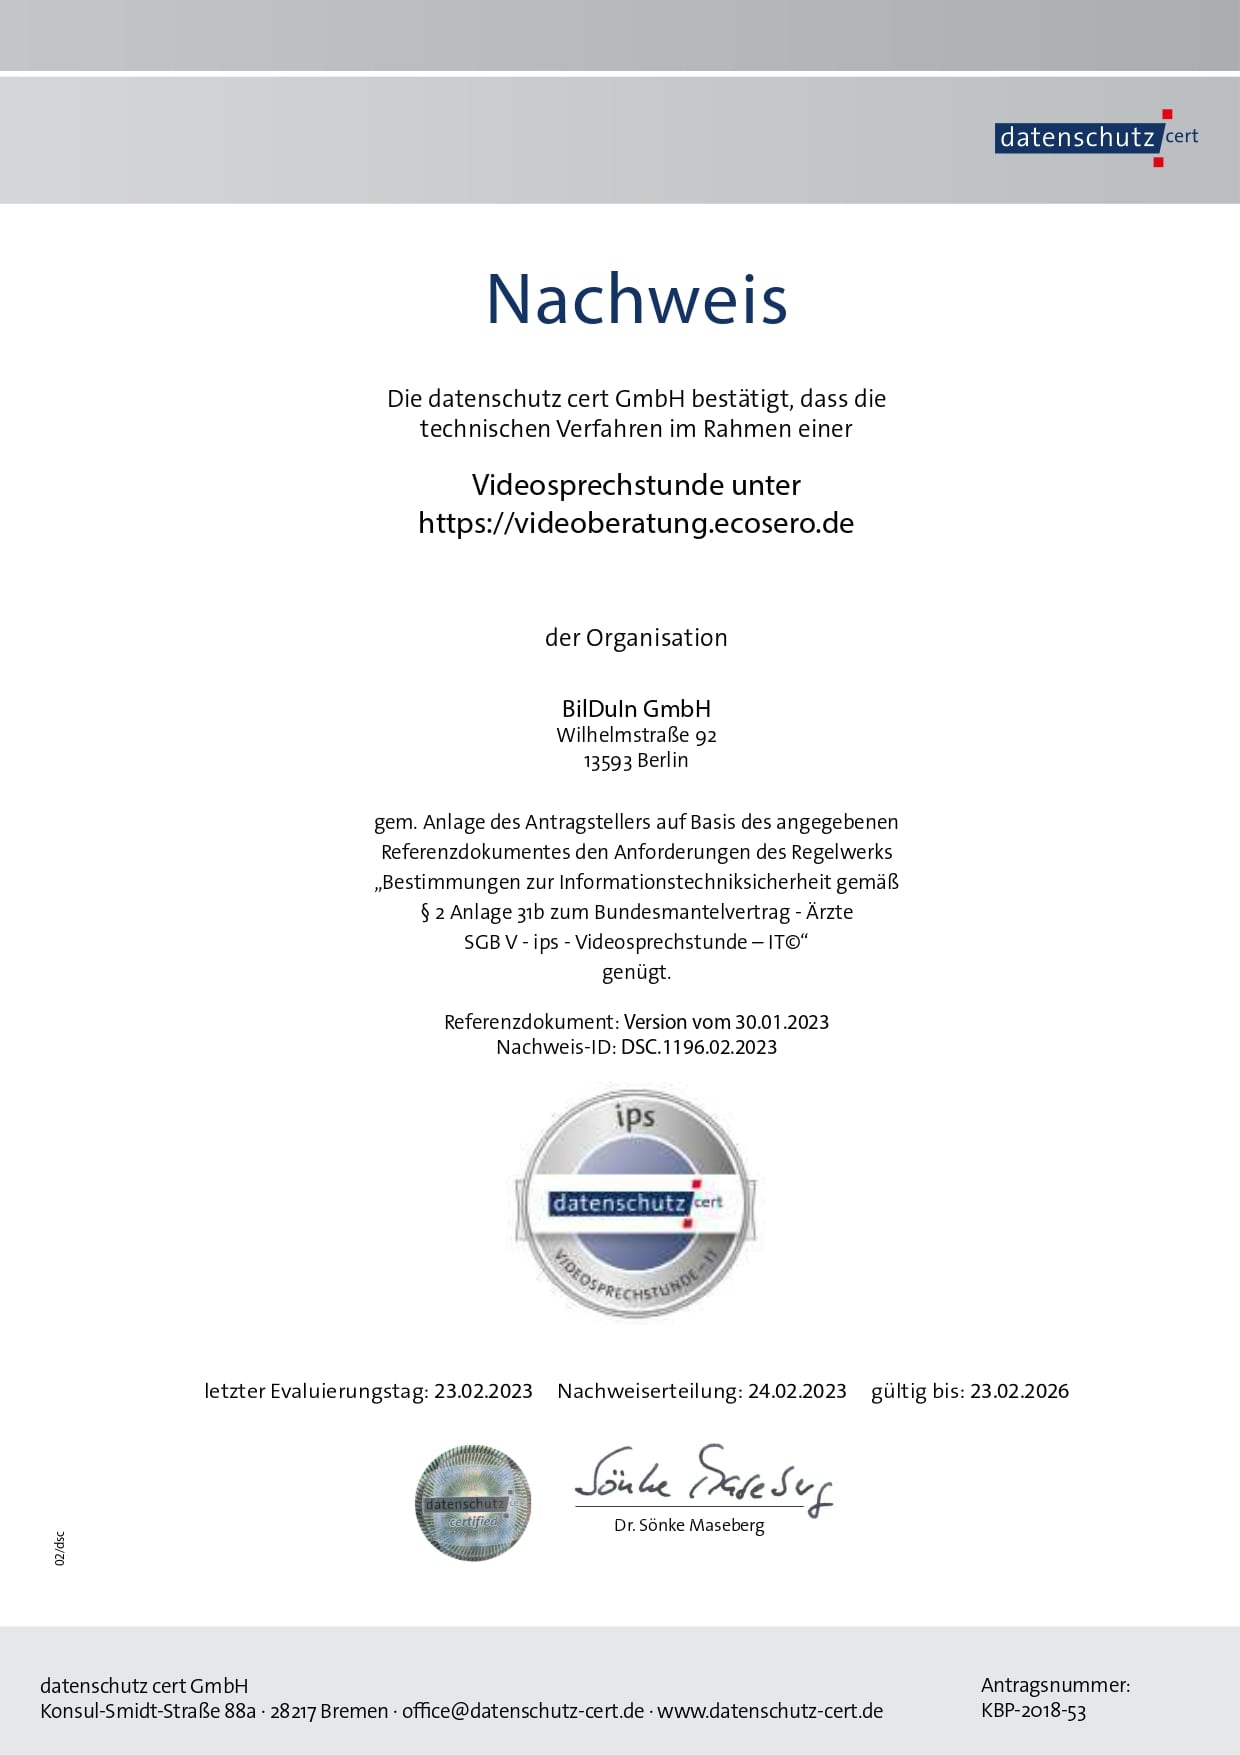 Verification datenschutz cert GmbH